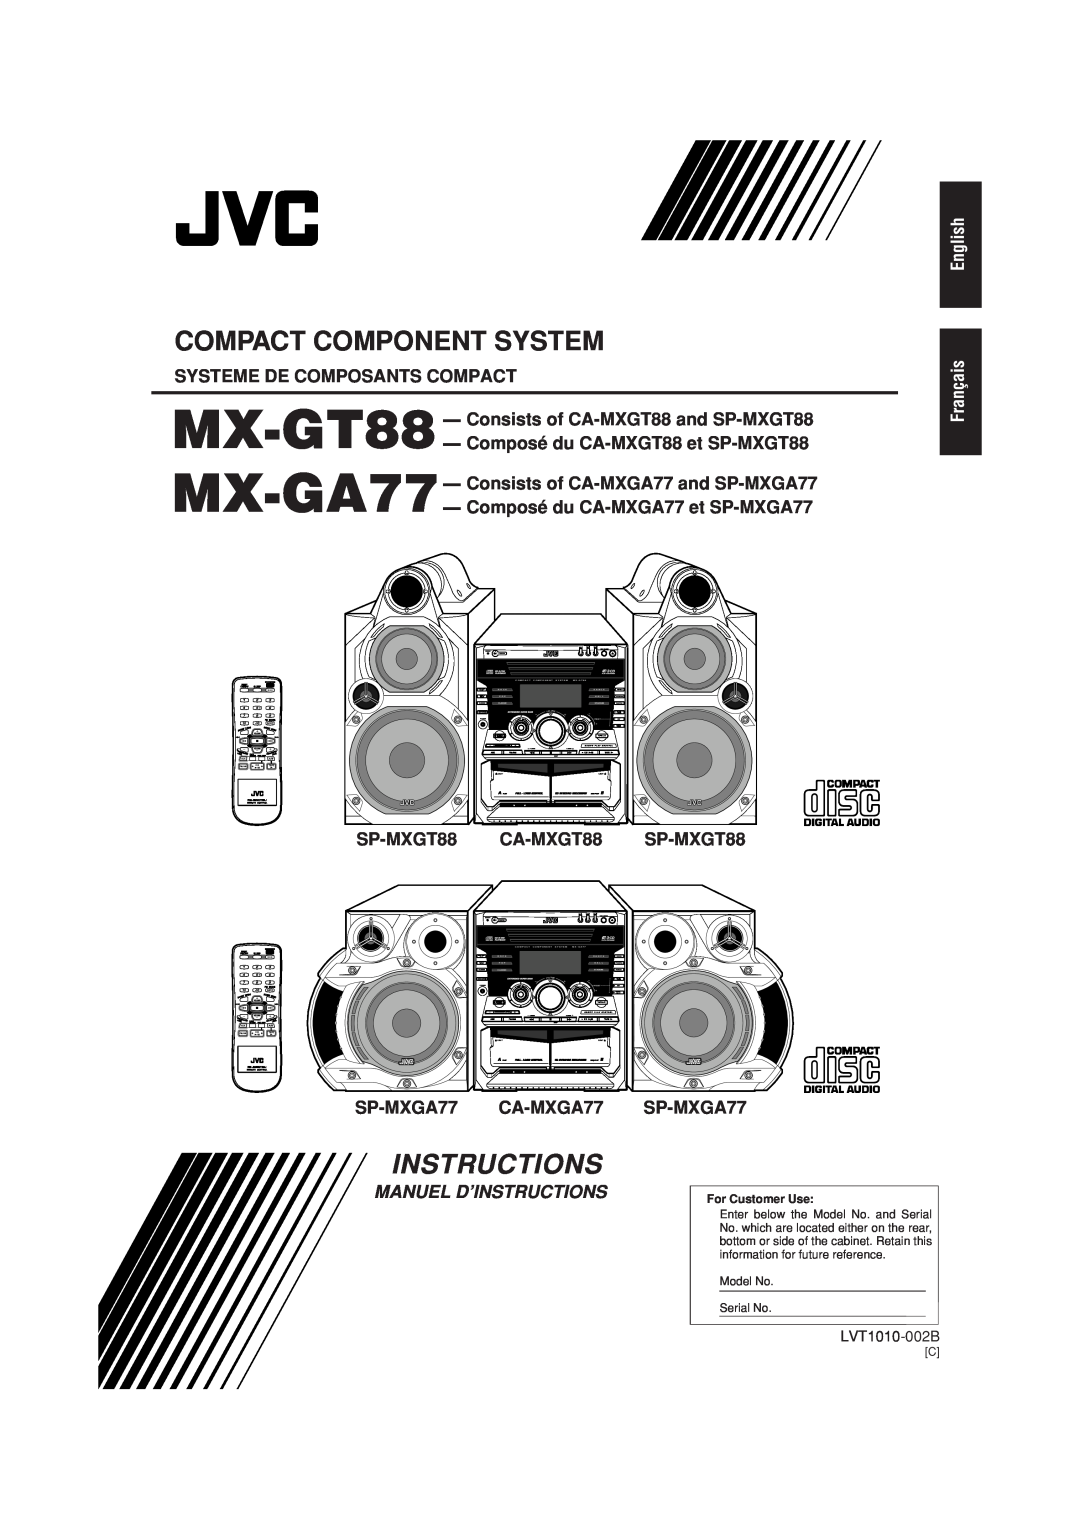 JVC Systeme De Composants Compact, MX-GT88 - Consists of CA-MXGT88and SP-MXGT88, Composé du CA-MXGT88et SP-MXGT88, Mode 